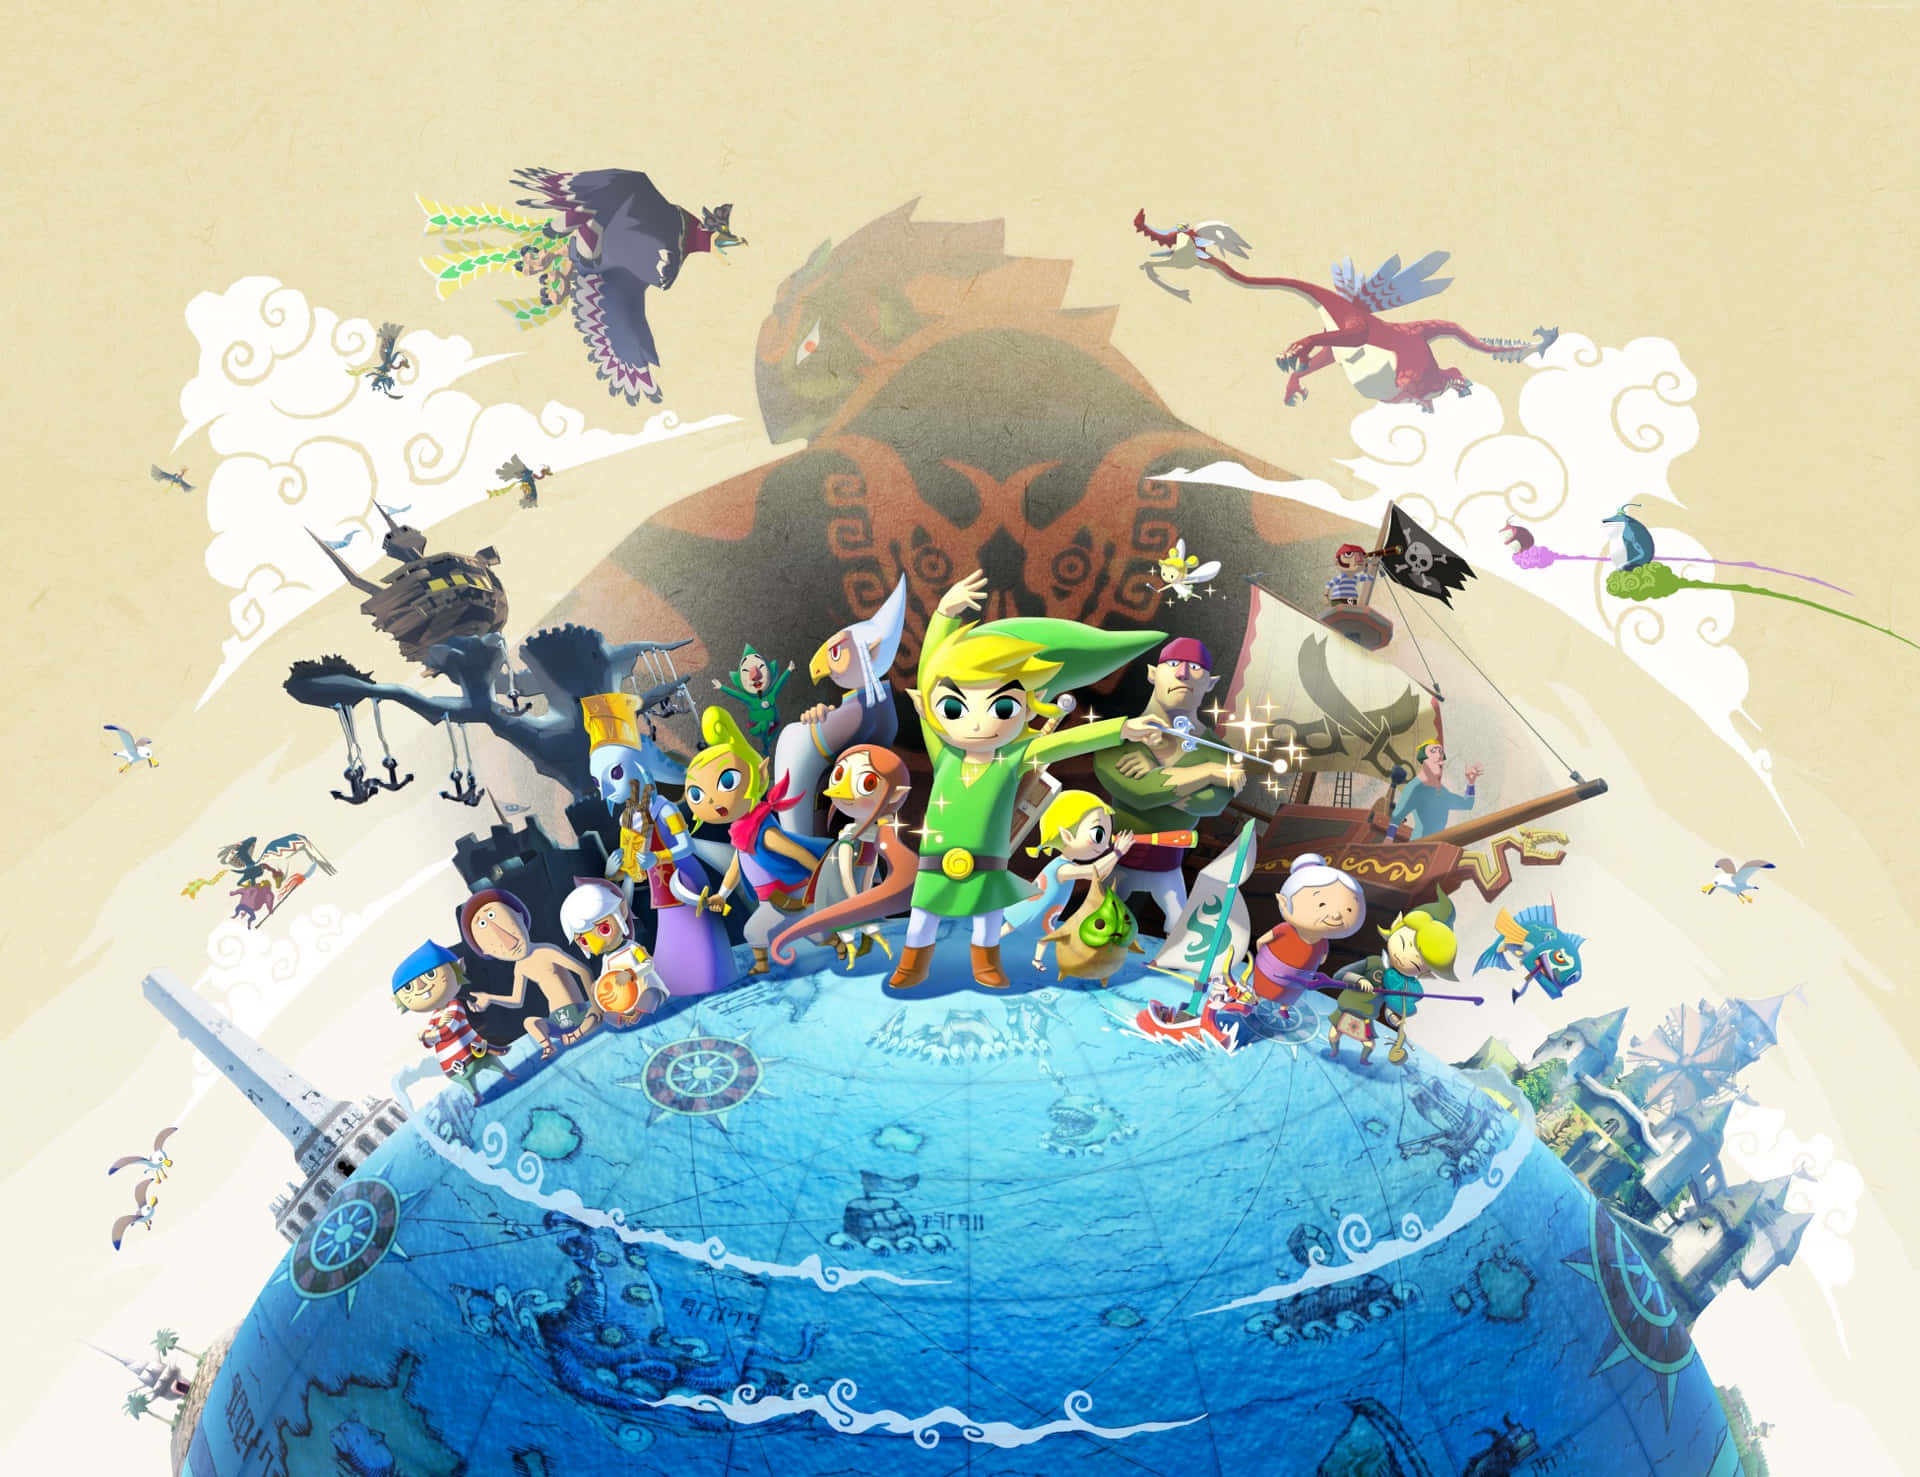 Caption: The Legend of Zelda Characters in Action Wallpaper